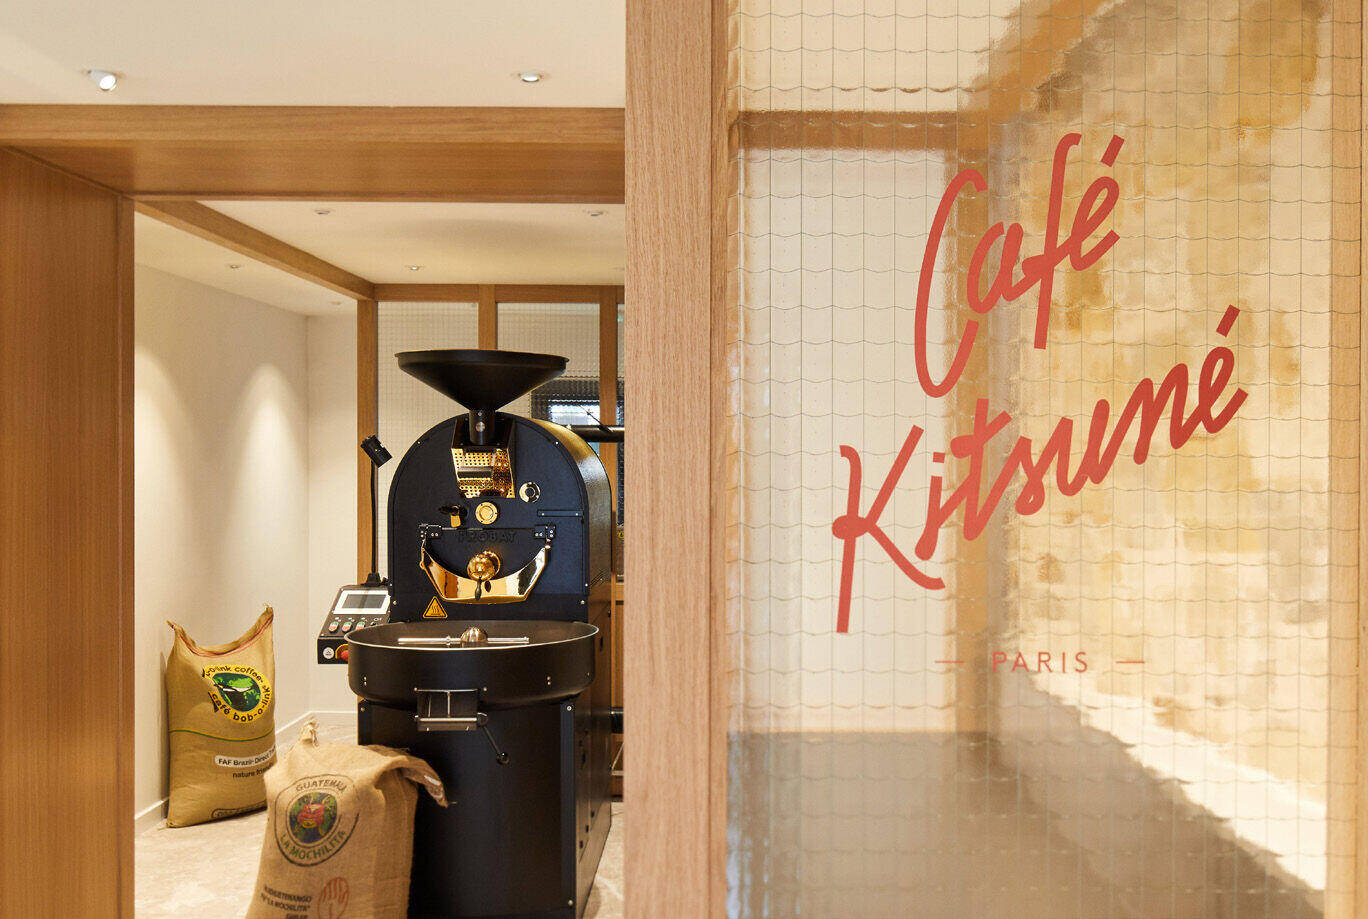 Coffee gets creative at Café Kitsuné - World Coffee Portal